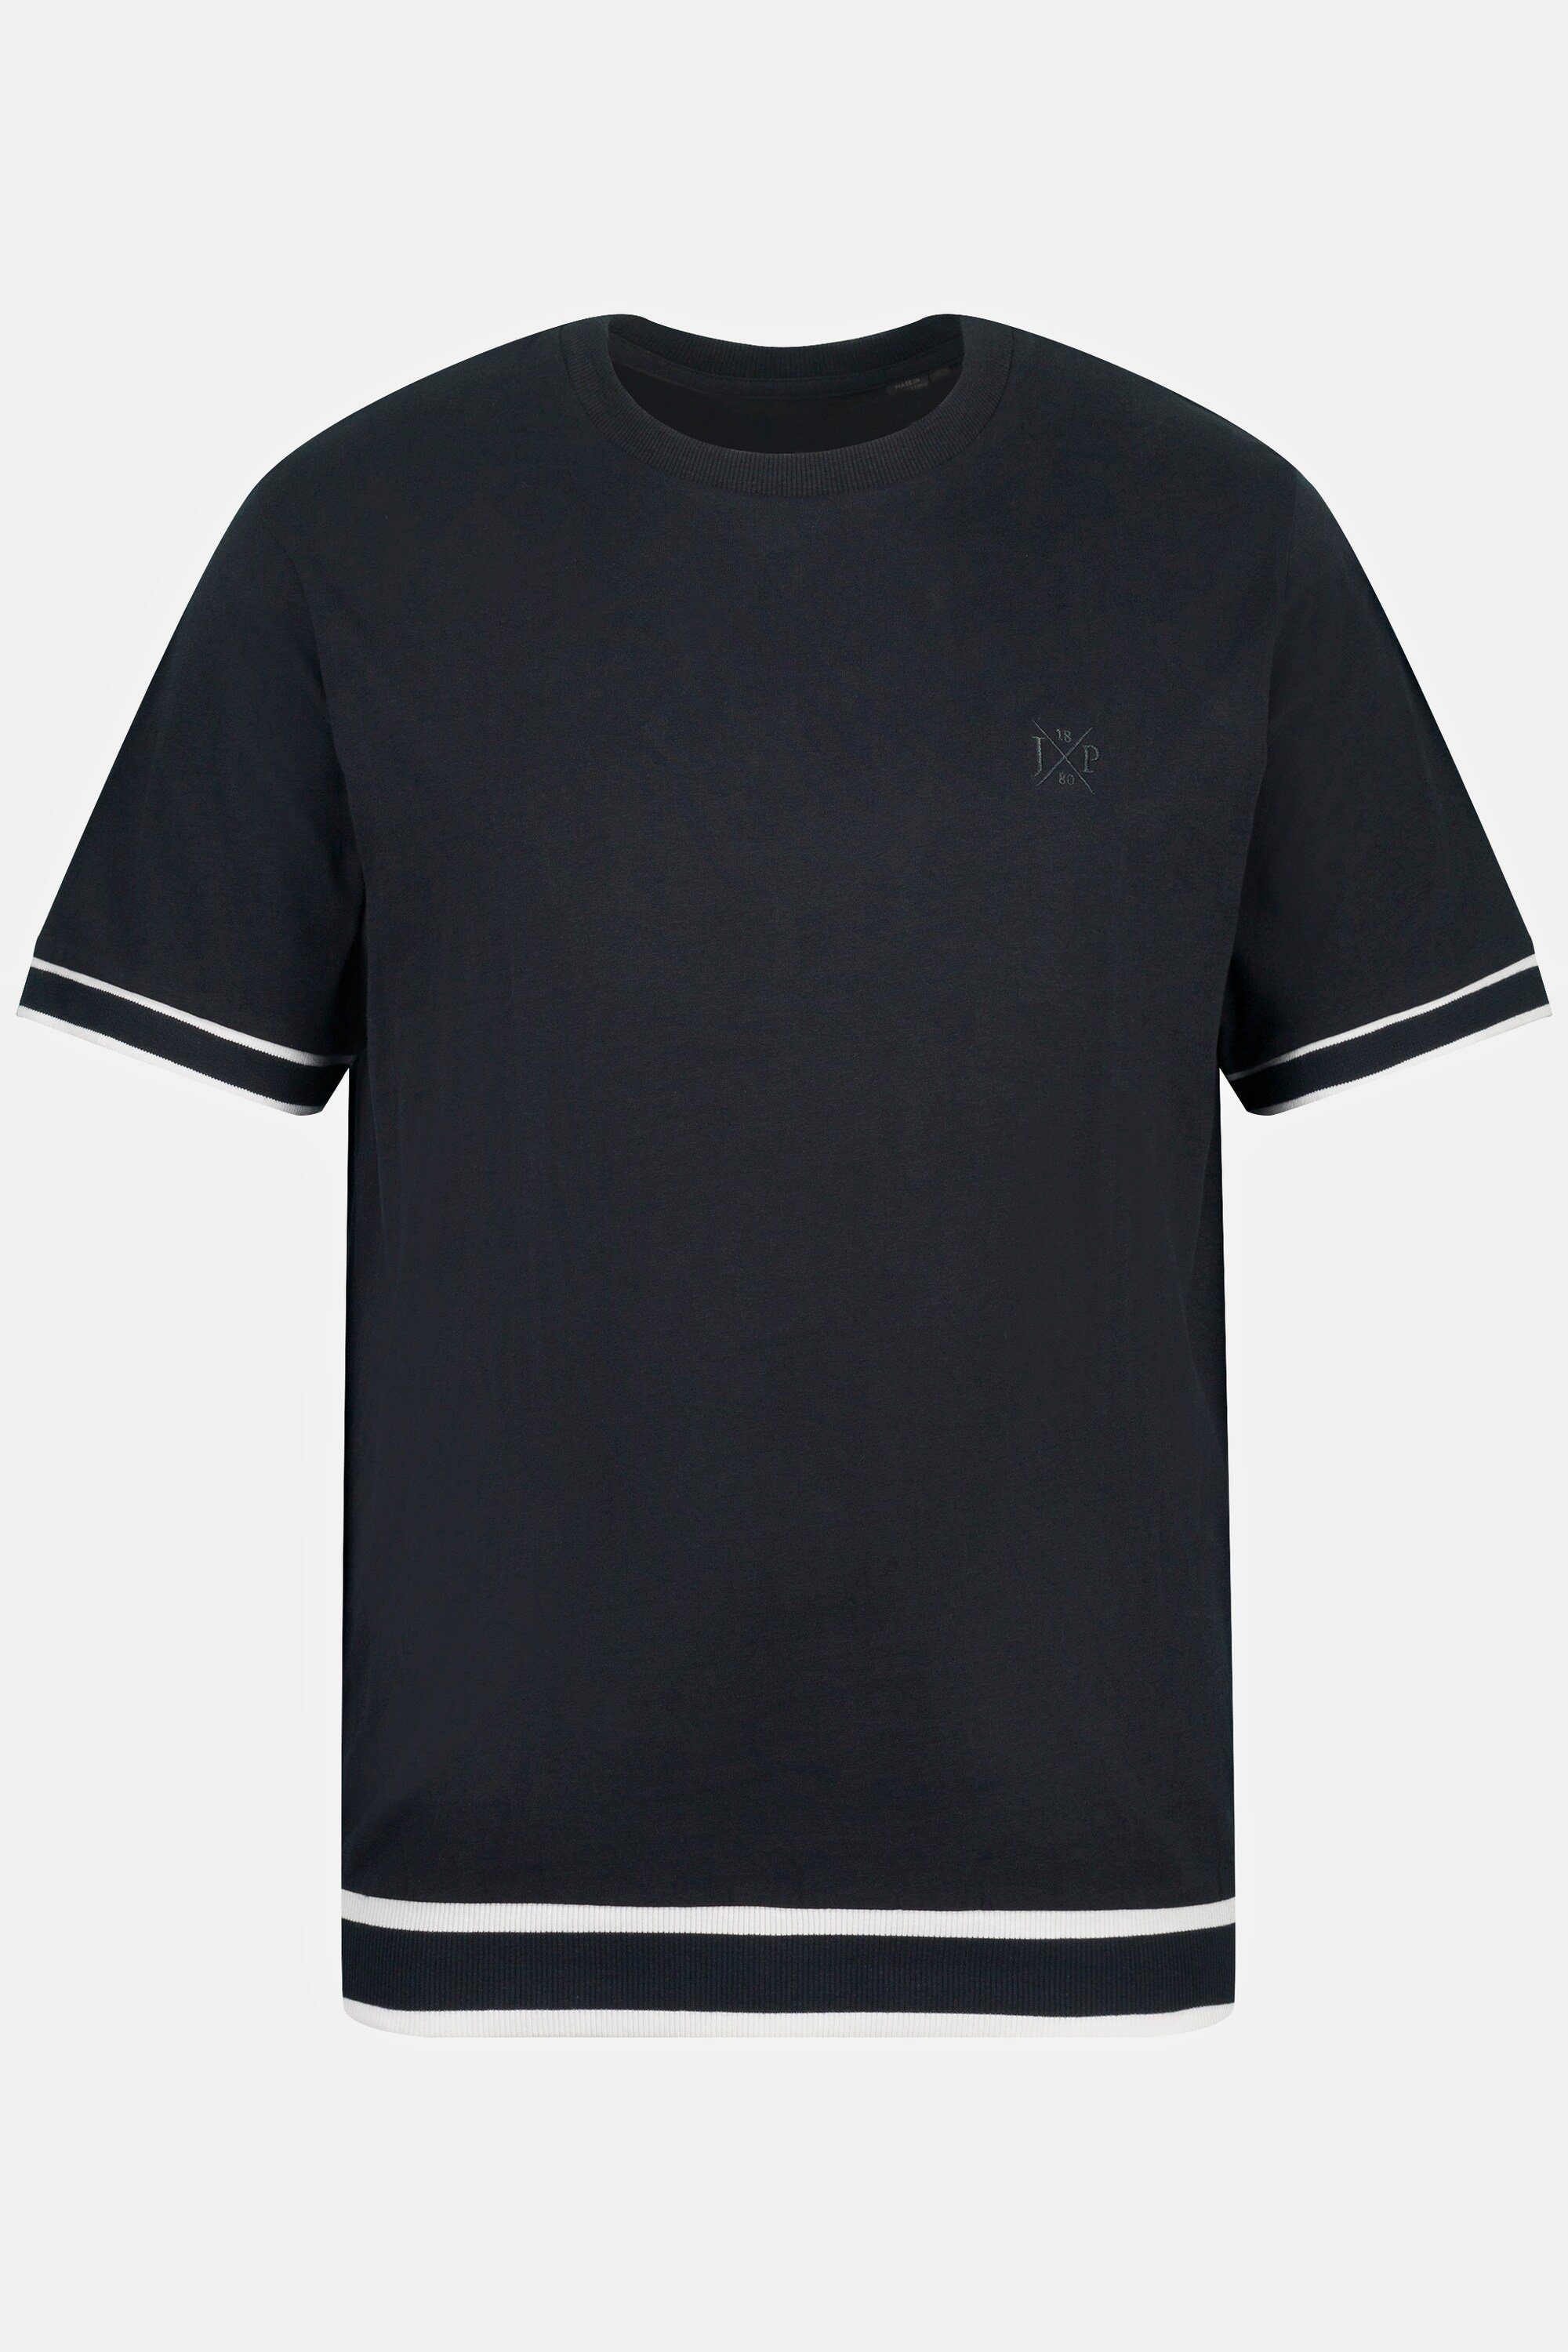 JP1880 Schlafanzug Schlafanzug Bauchfit Shirt XL bis 8 kurze Hose